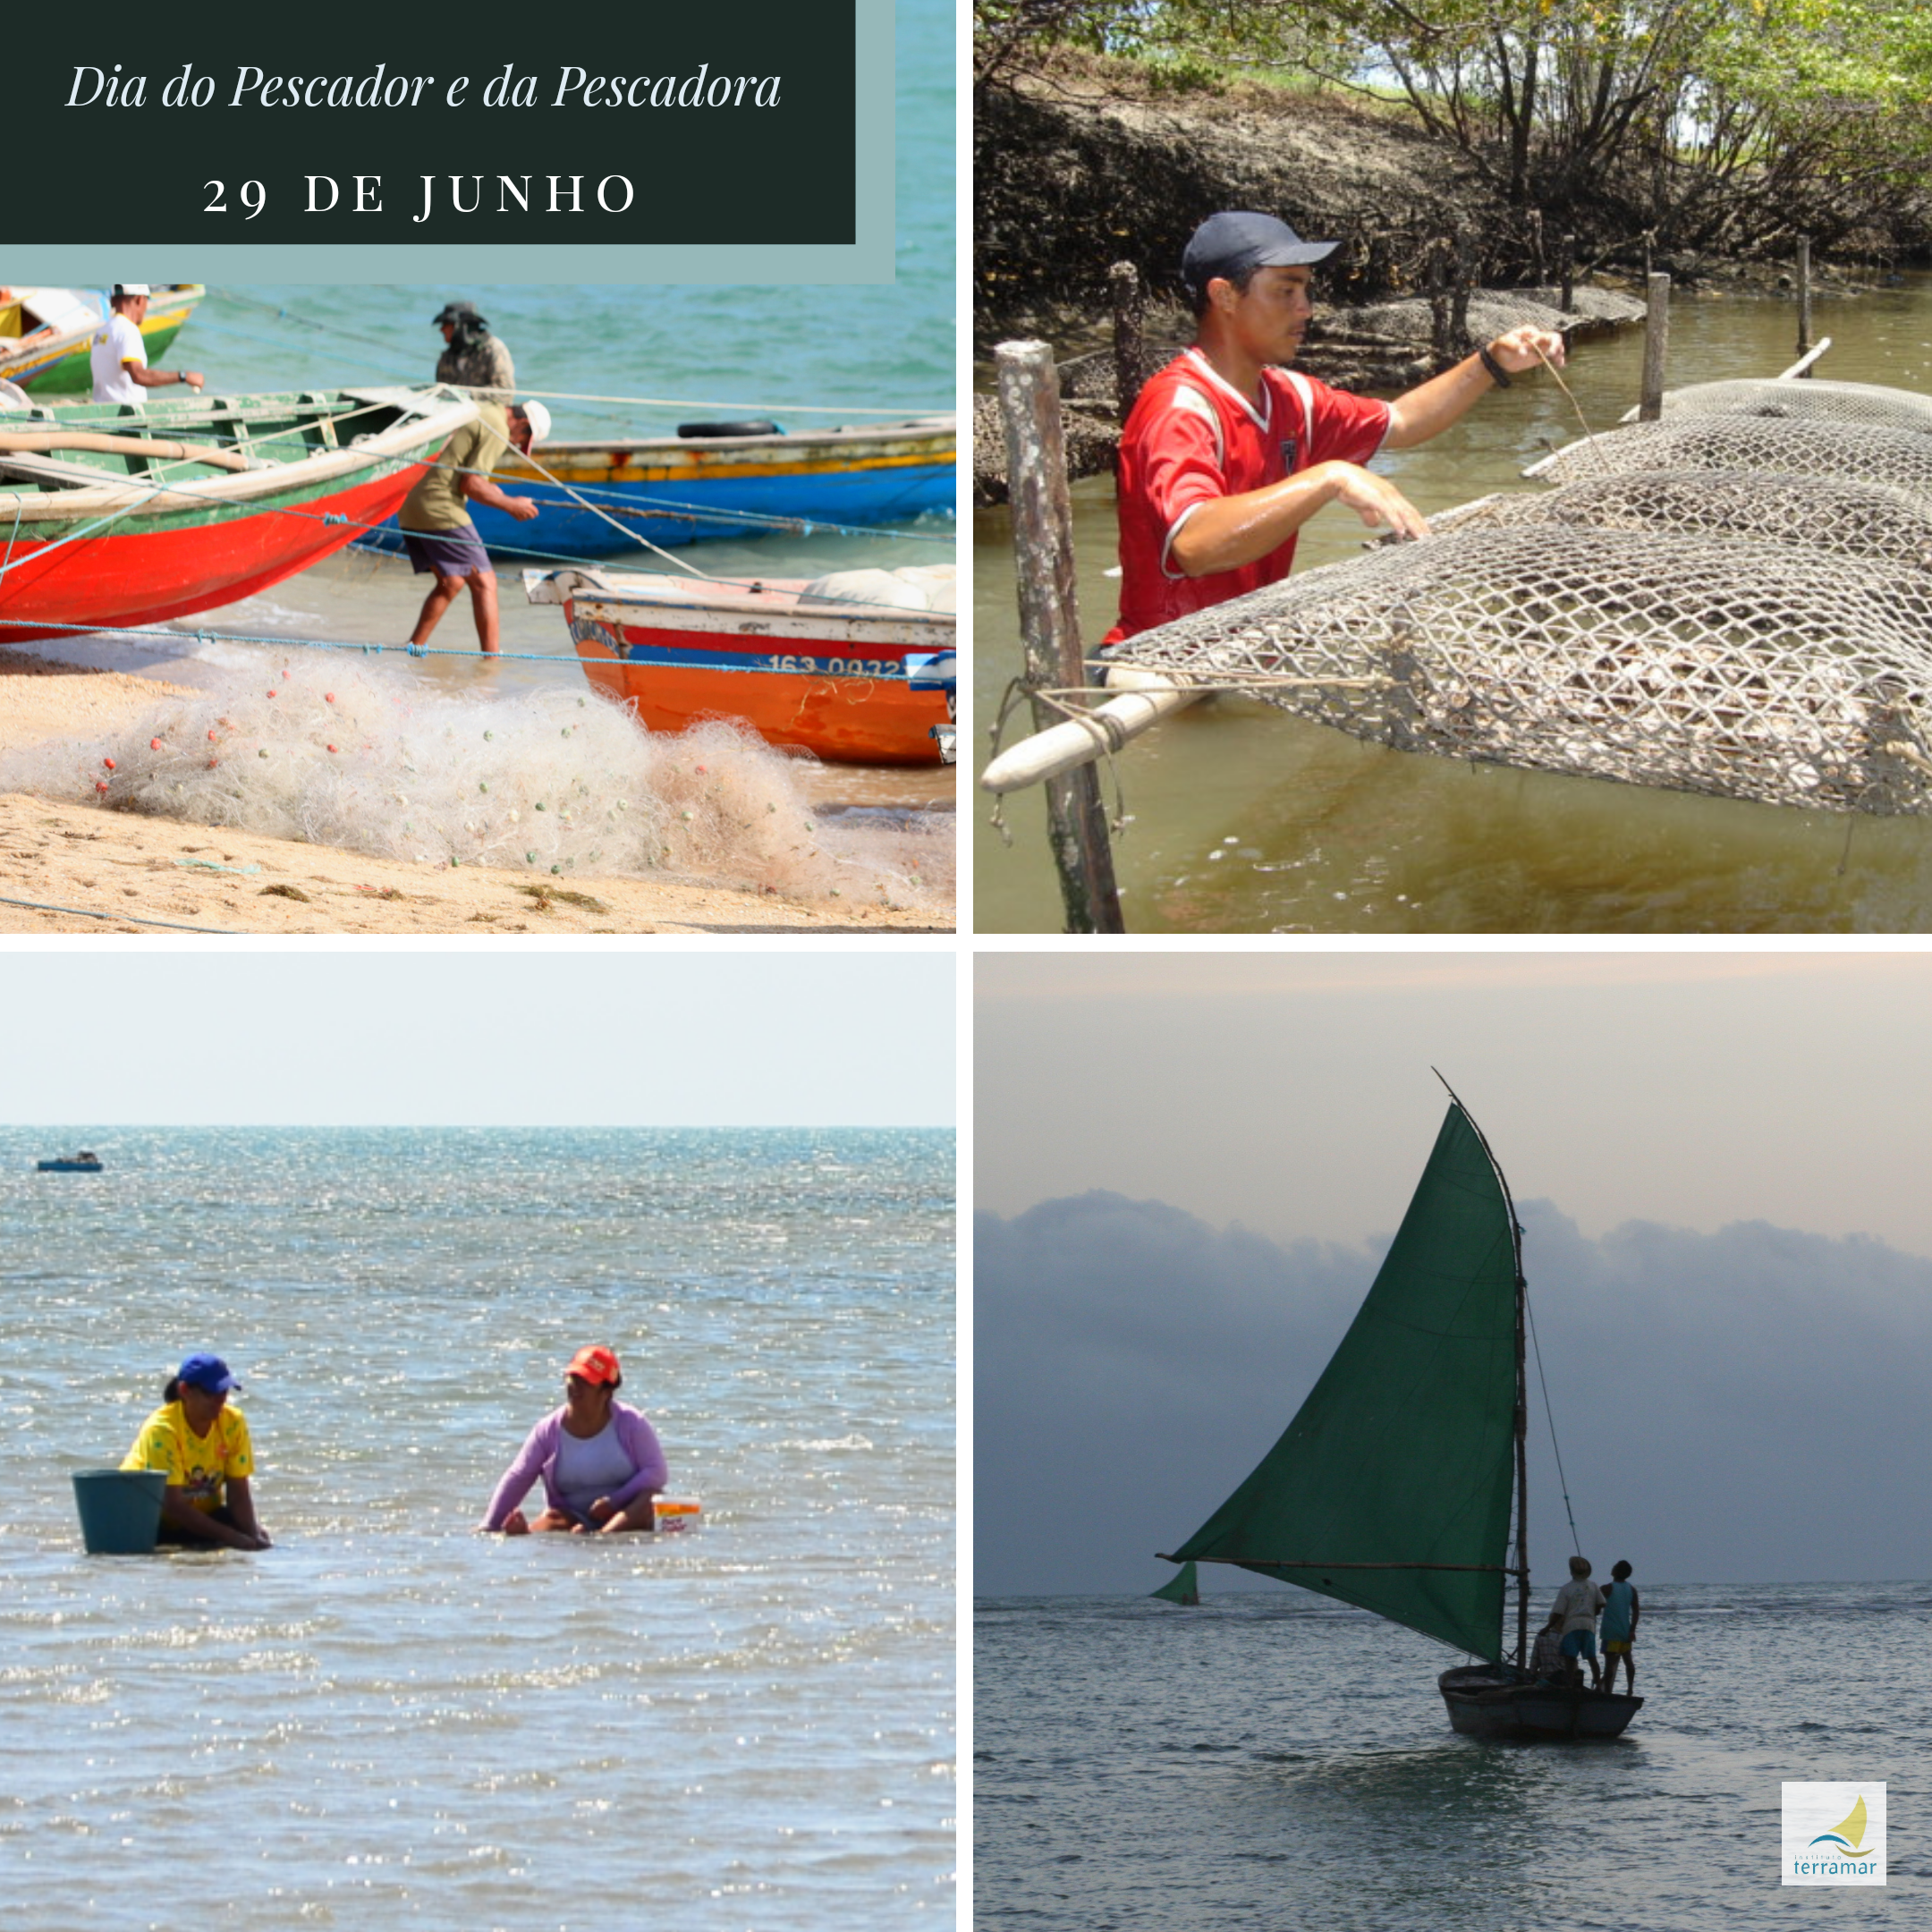 Dia 29 de junho – Dia do pescador e da pescadora